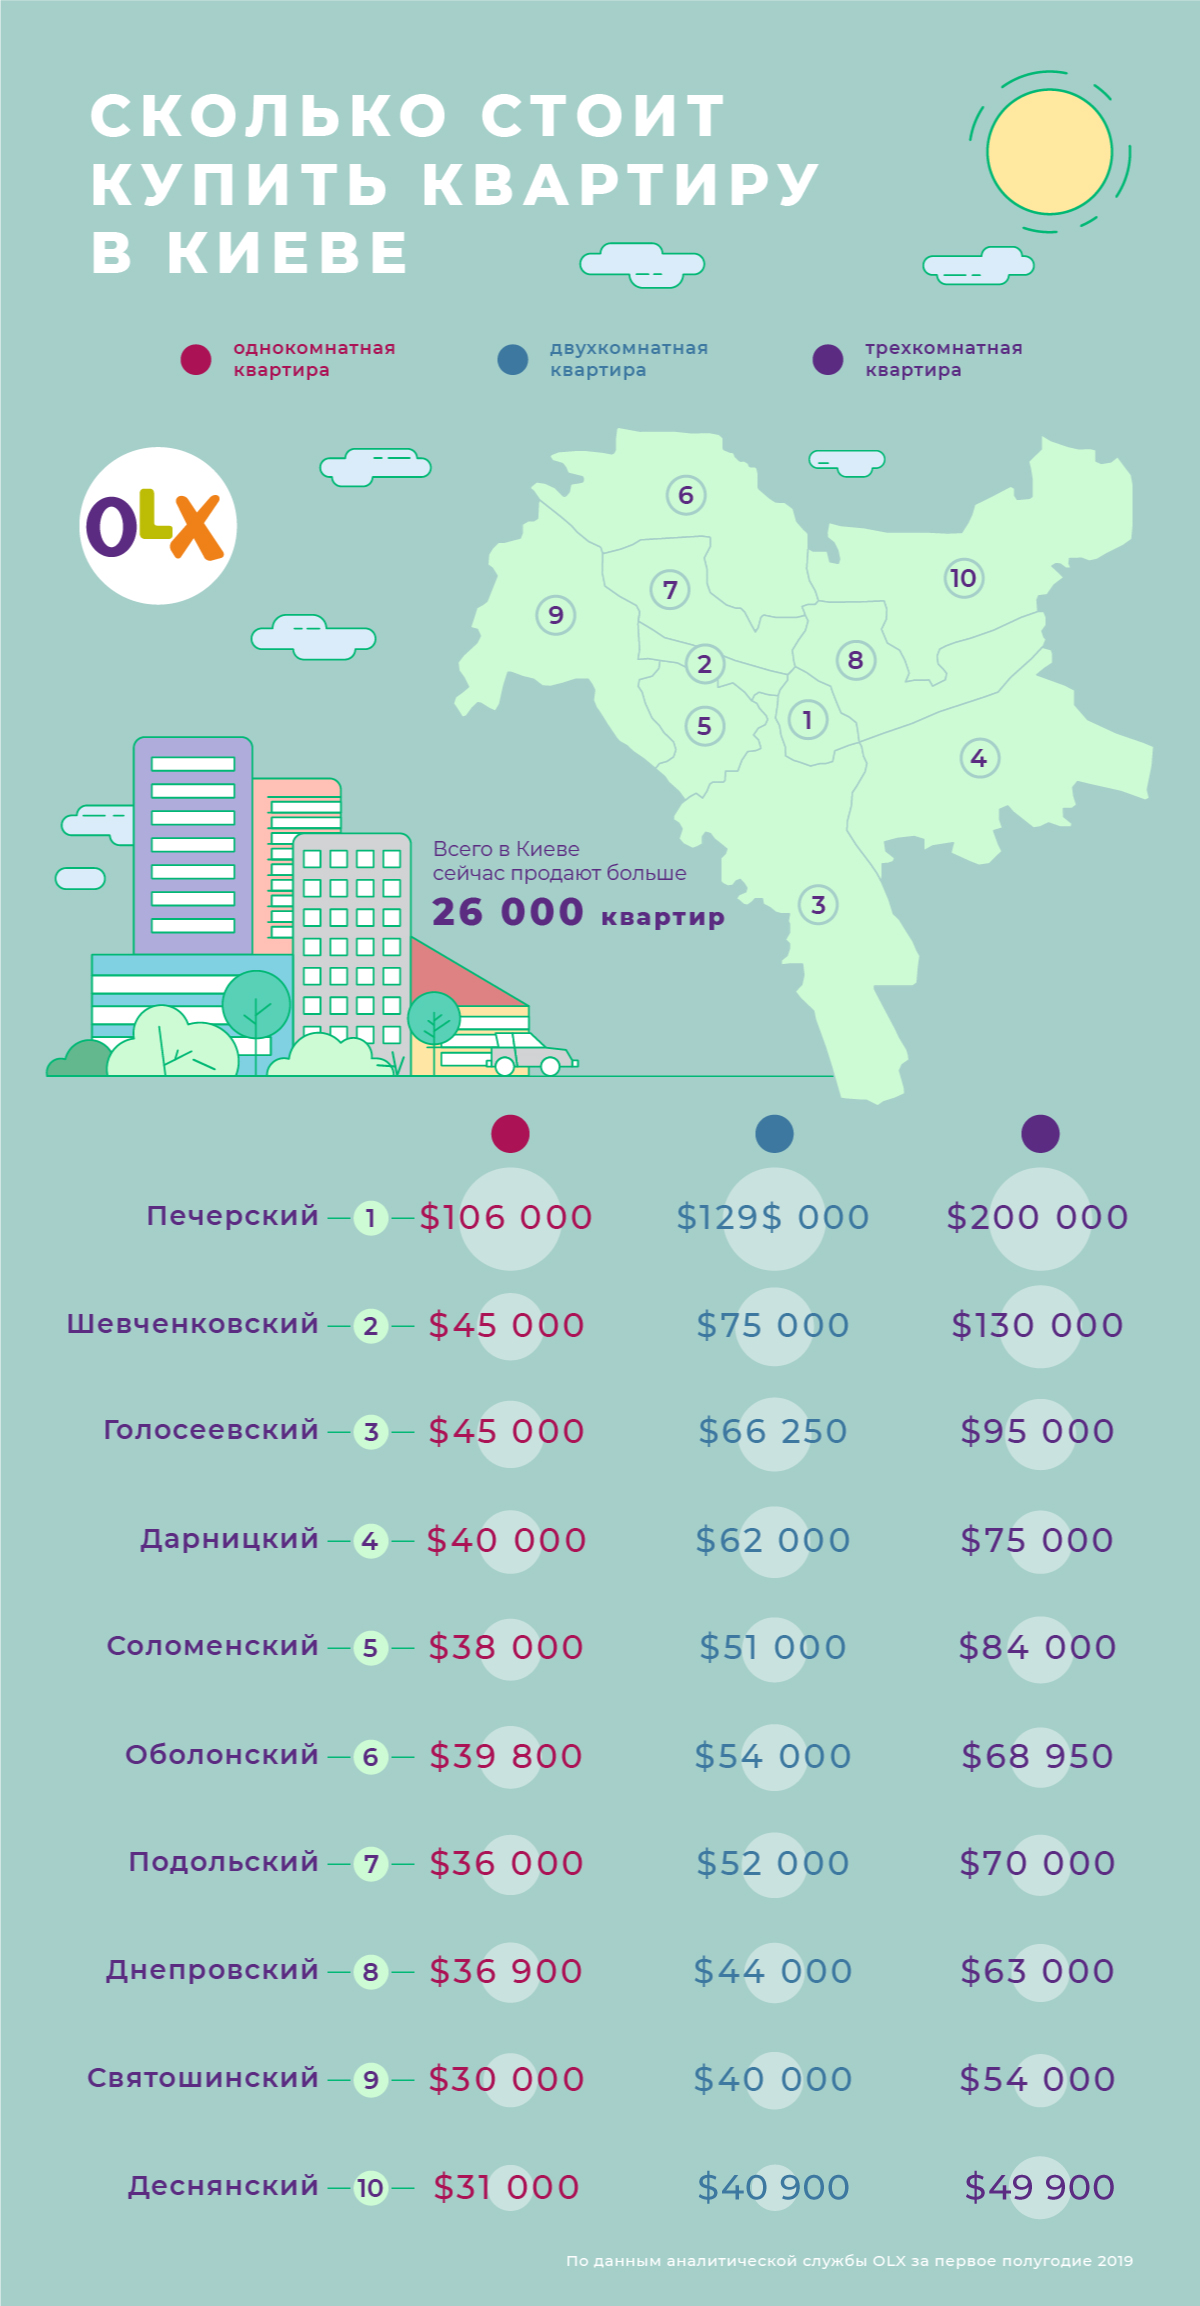 OLX_Сколько стоит купить квартиру в Киеве